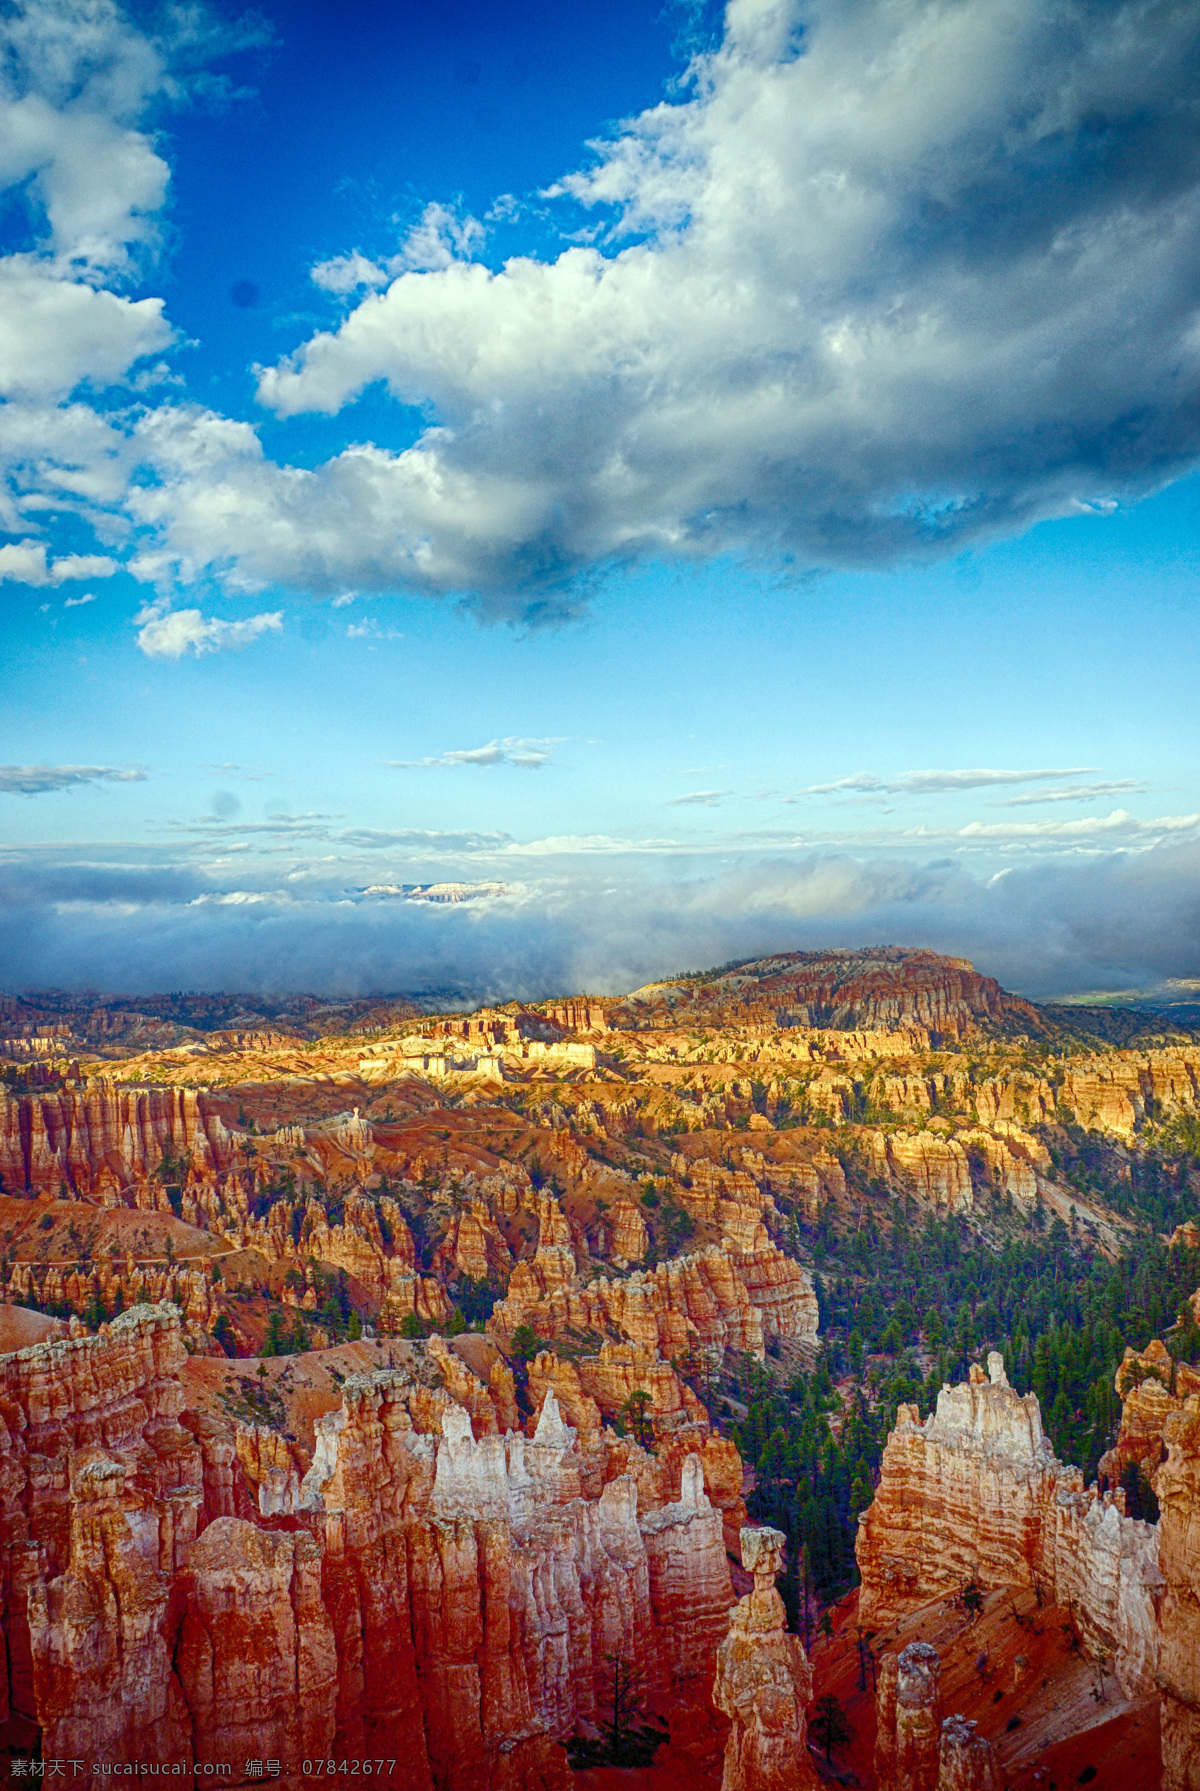 美国 岩石 峡谷 景 旅游 旅行 蓝天 天空 云彩 云朵 白云 自然风景 自然景观 高清 旅游摄影 国外旅游